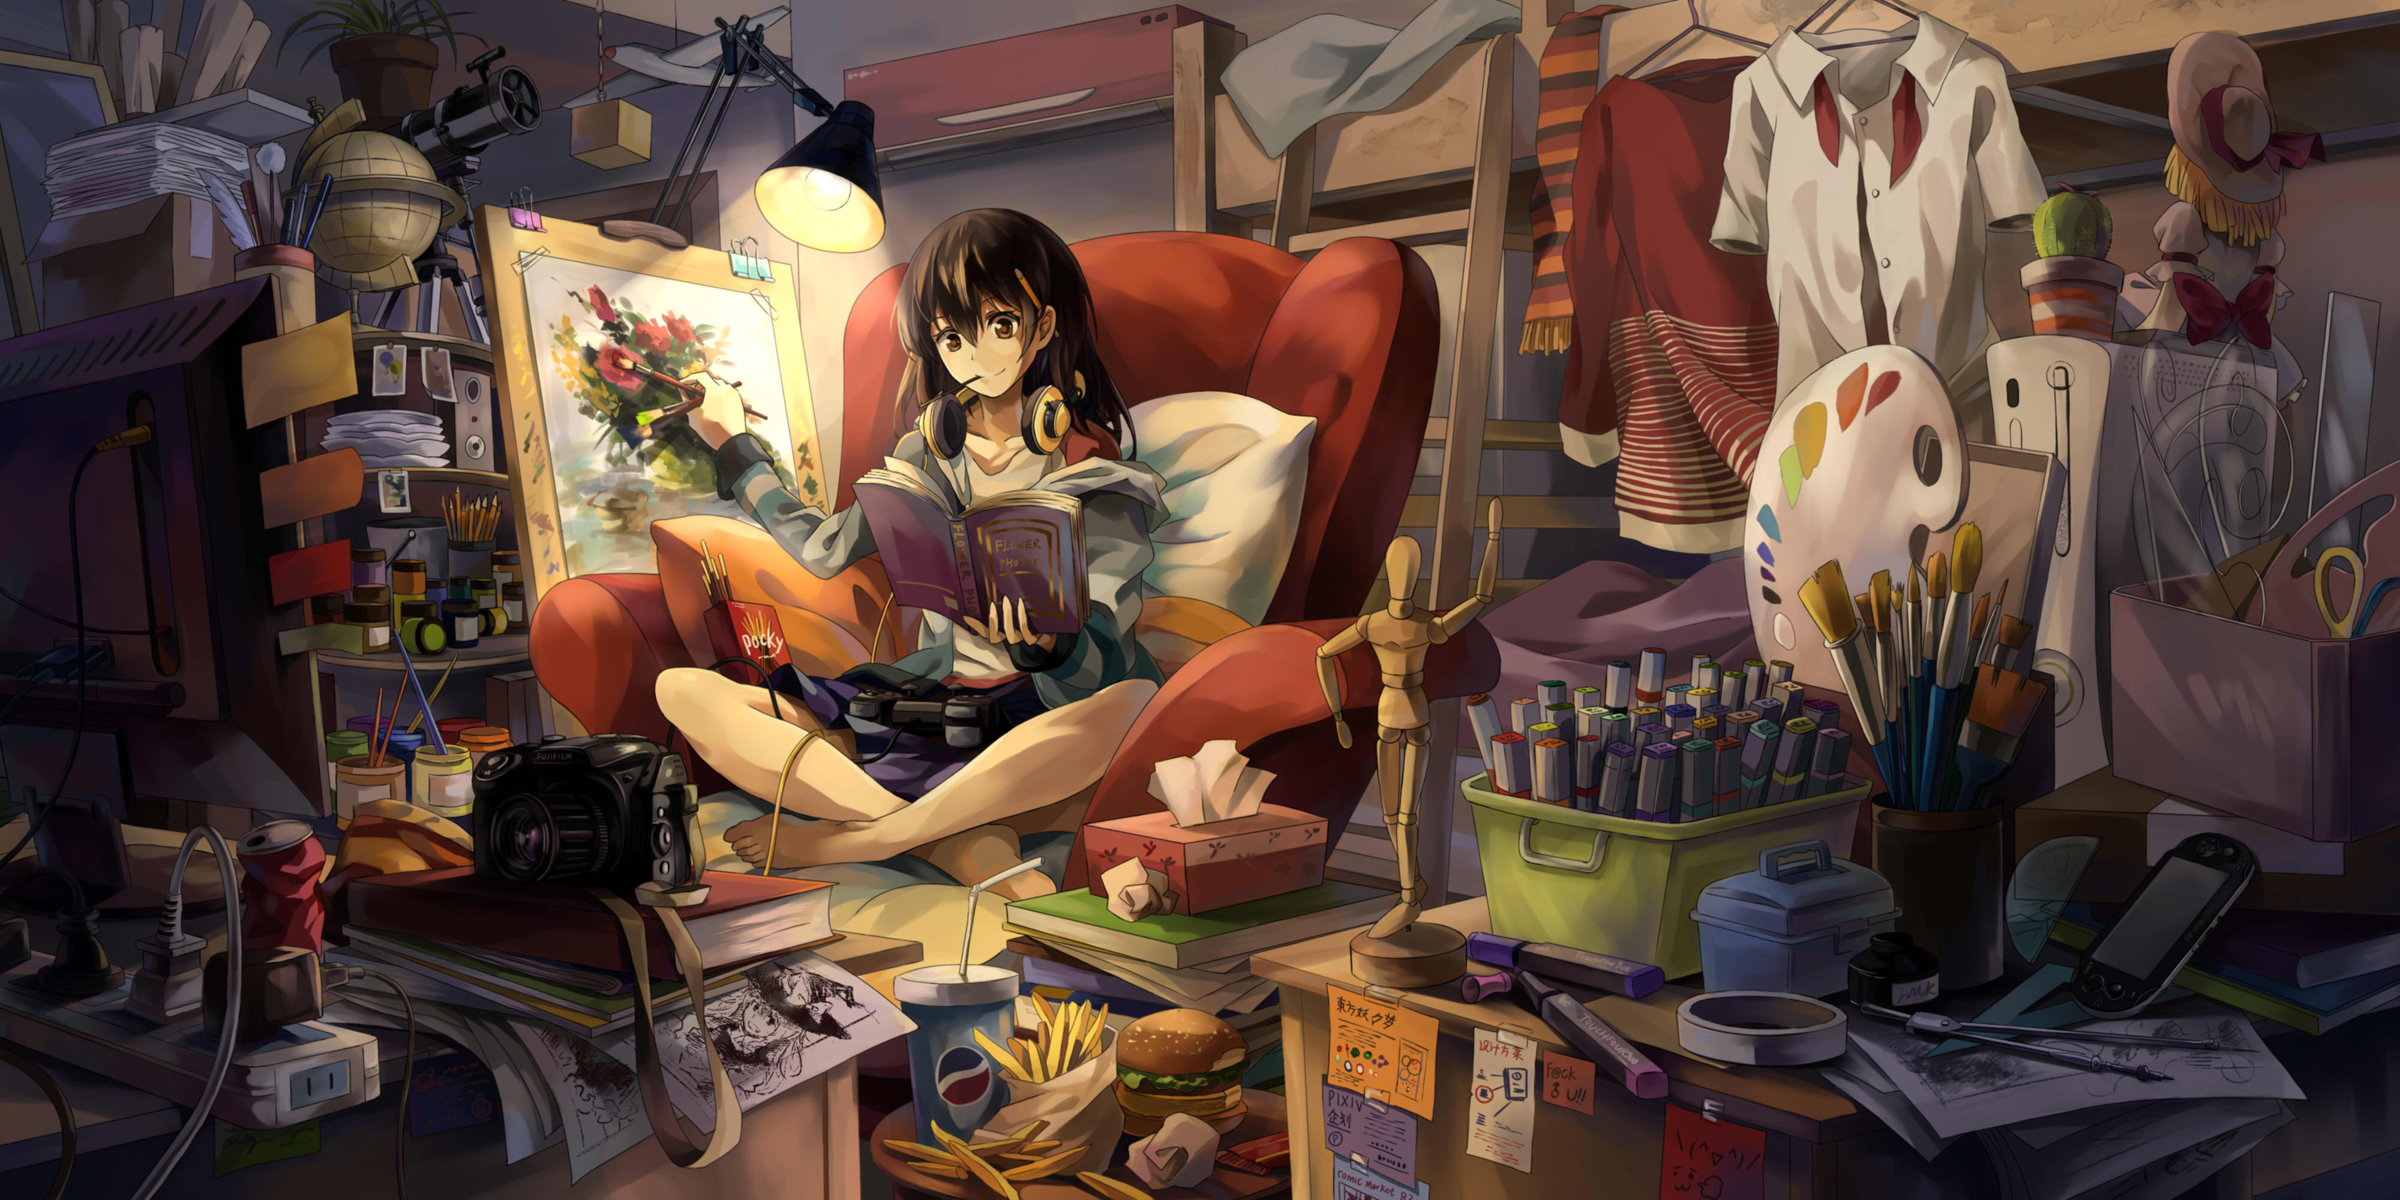 girl, anime, book, easel, headphones, lamp, room 32K